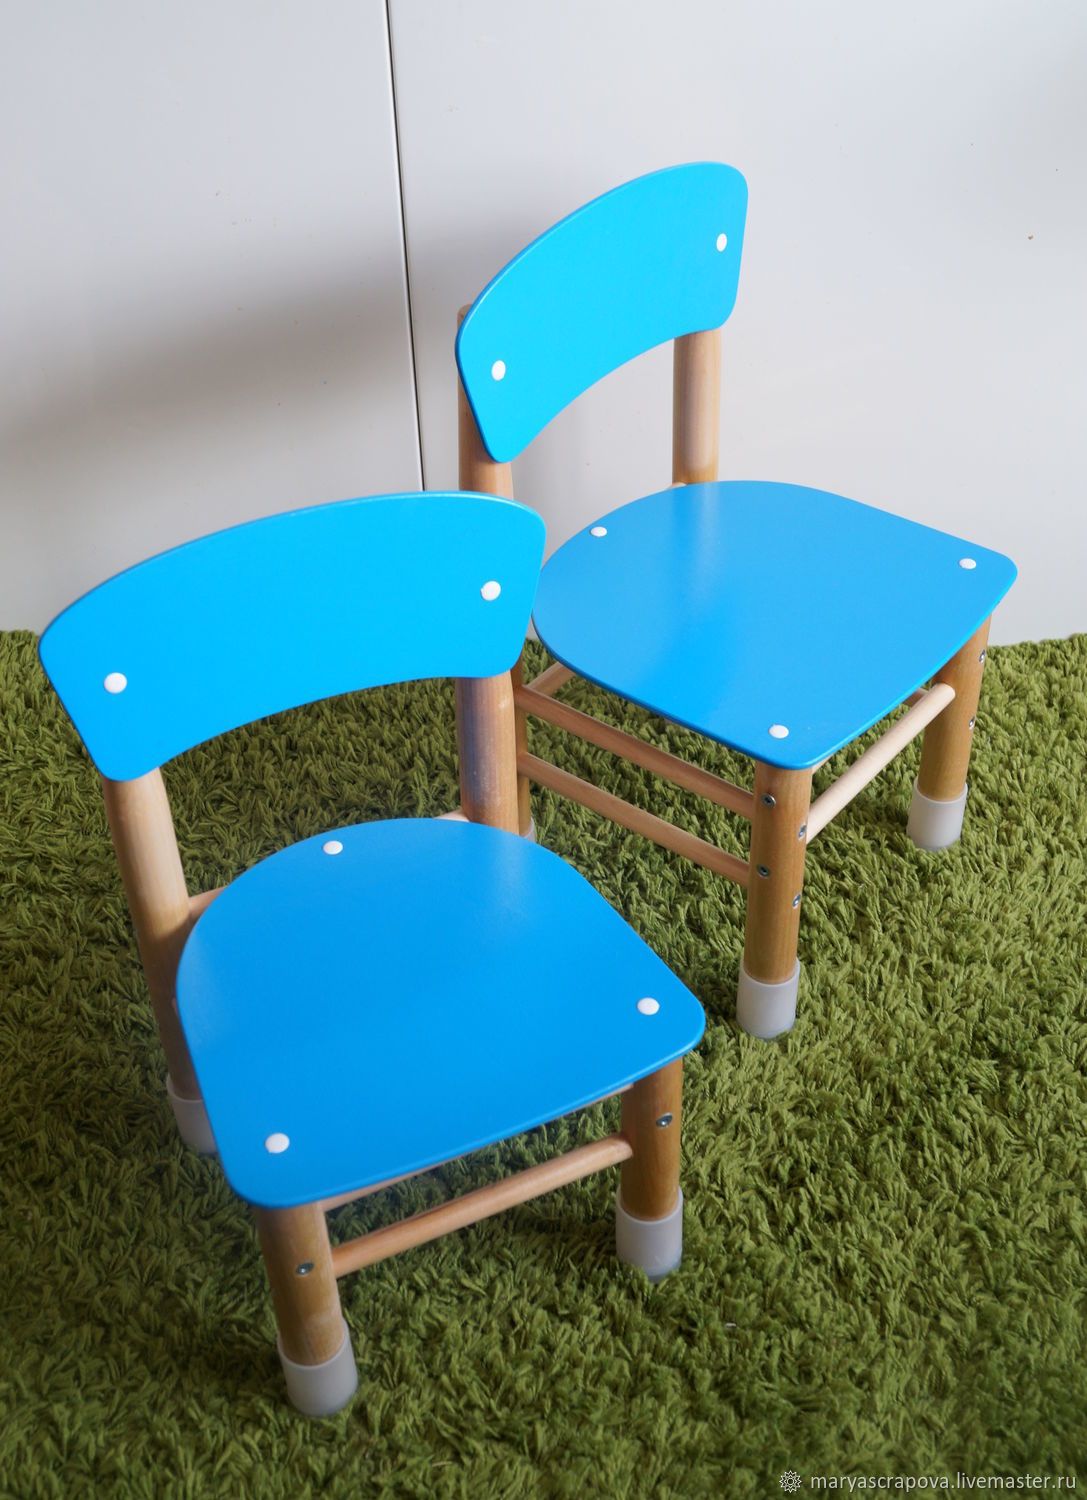 Набор столик со стульчиком 03-402-t (цвет: зелено-голубой) Slide 3 of 2